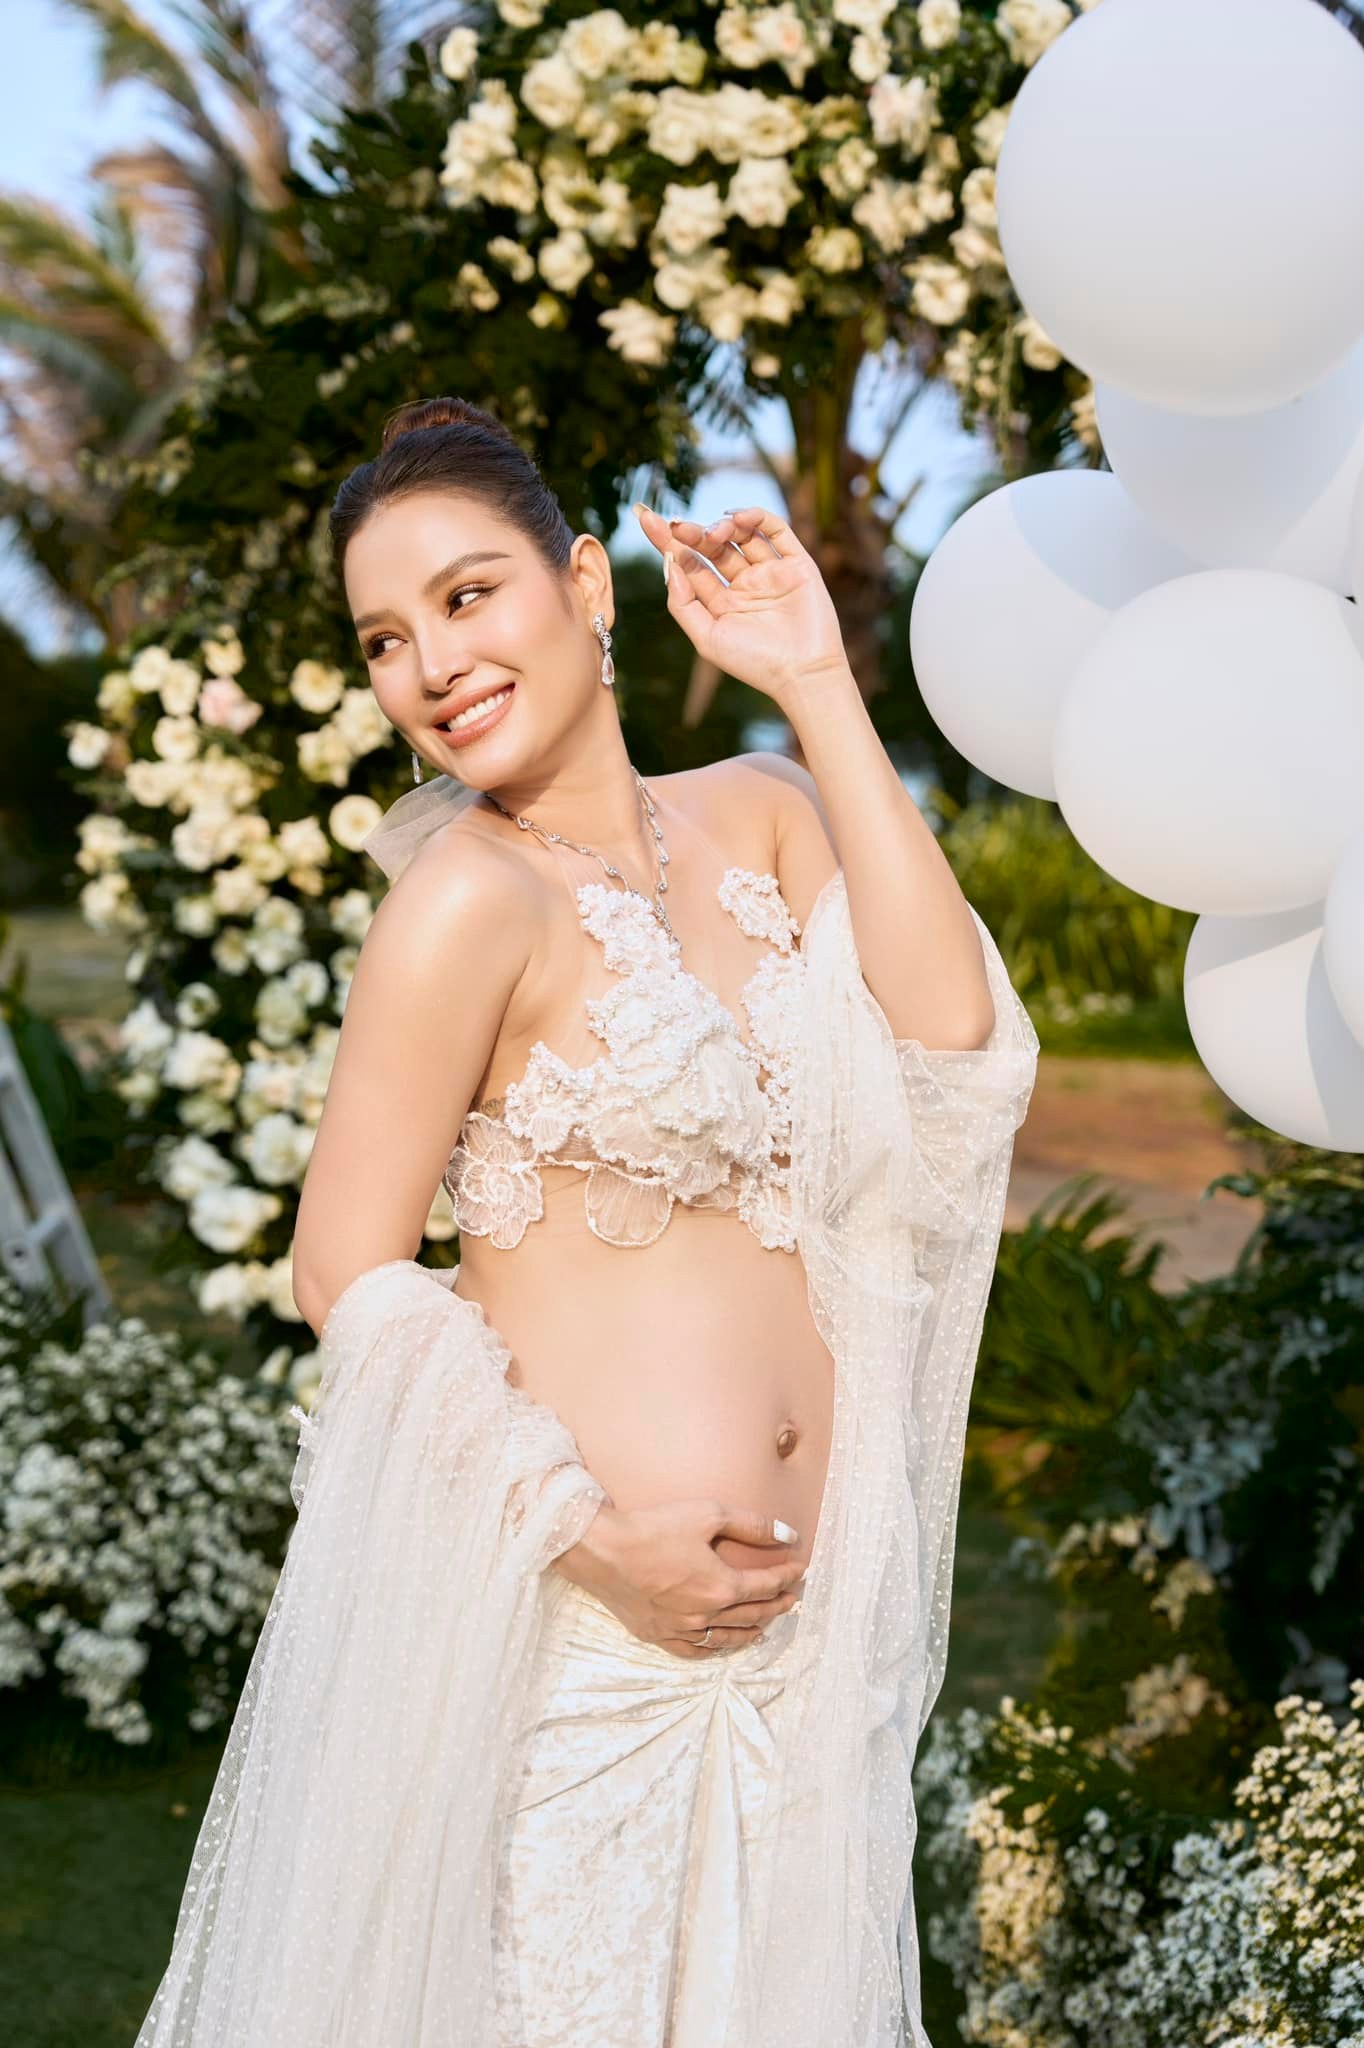 Phương Trinh Jolie mang thai 7 tháng vẫn diện đầm cưới độc lạ khoe trọn bụng bầu - ảnh 2